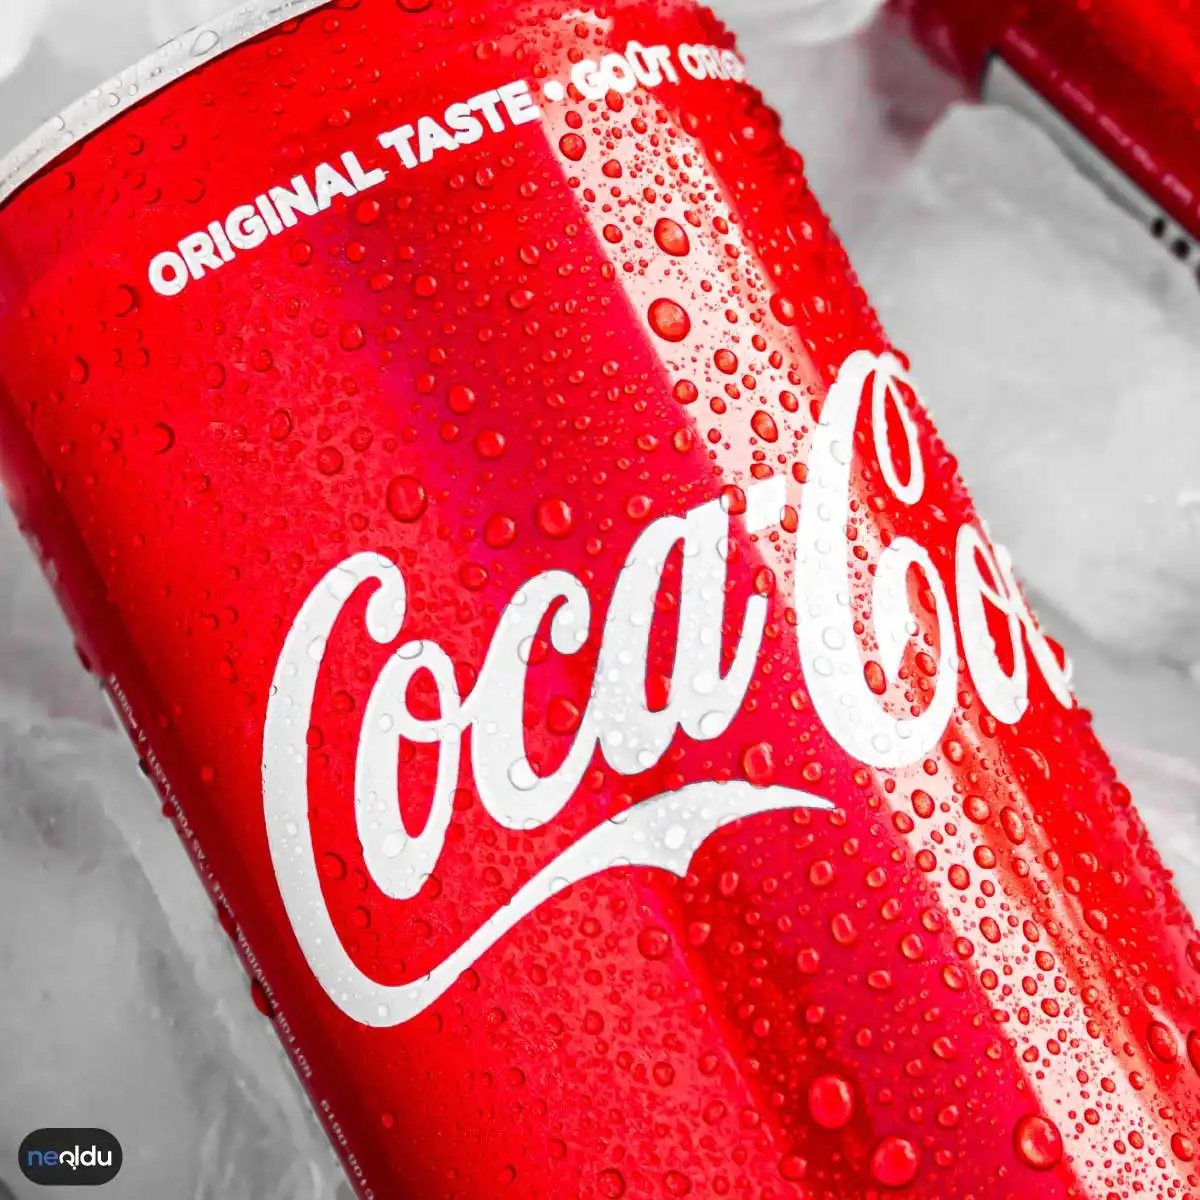 Coca-Cola Hakkında Bilgiler